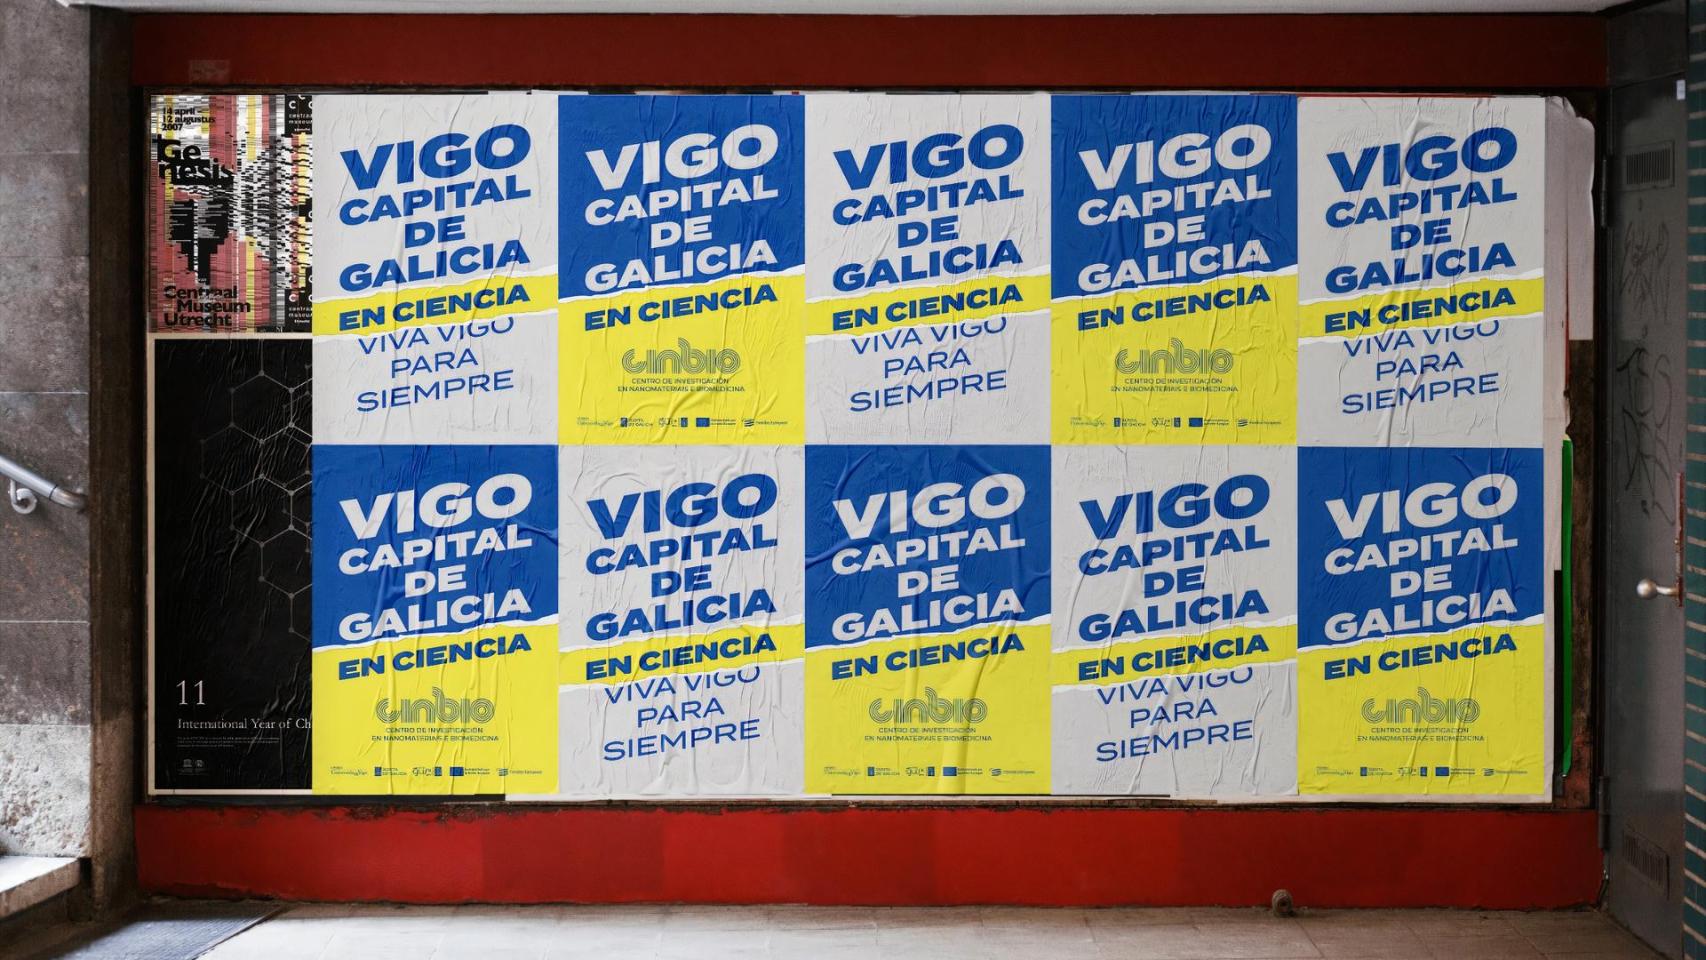 Campaña Vigo, capital de Galicia